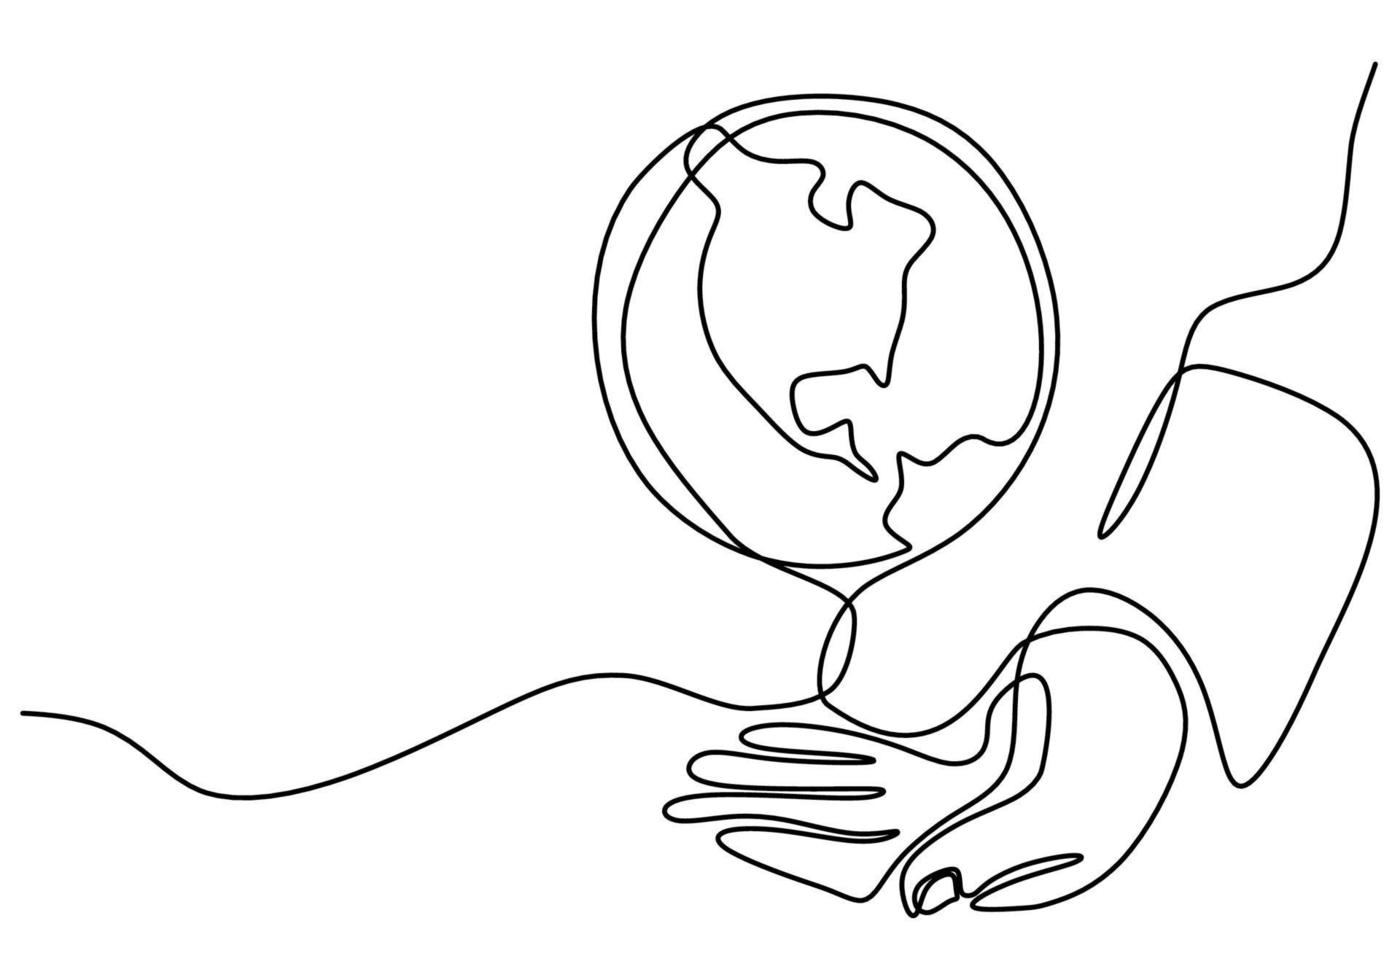 kontinuerlig en linjeteckning av händer som håller jordgloben isolerad på vit bakgrund. jorddagens tema. en mänsklig hand som håller världen planeten jorden kontur handritad skiss design. vektor illustration